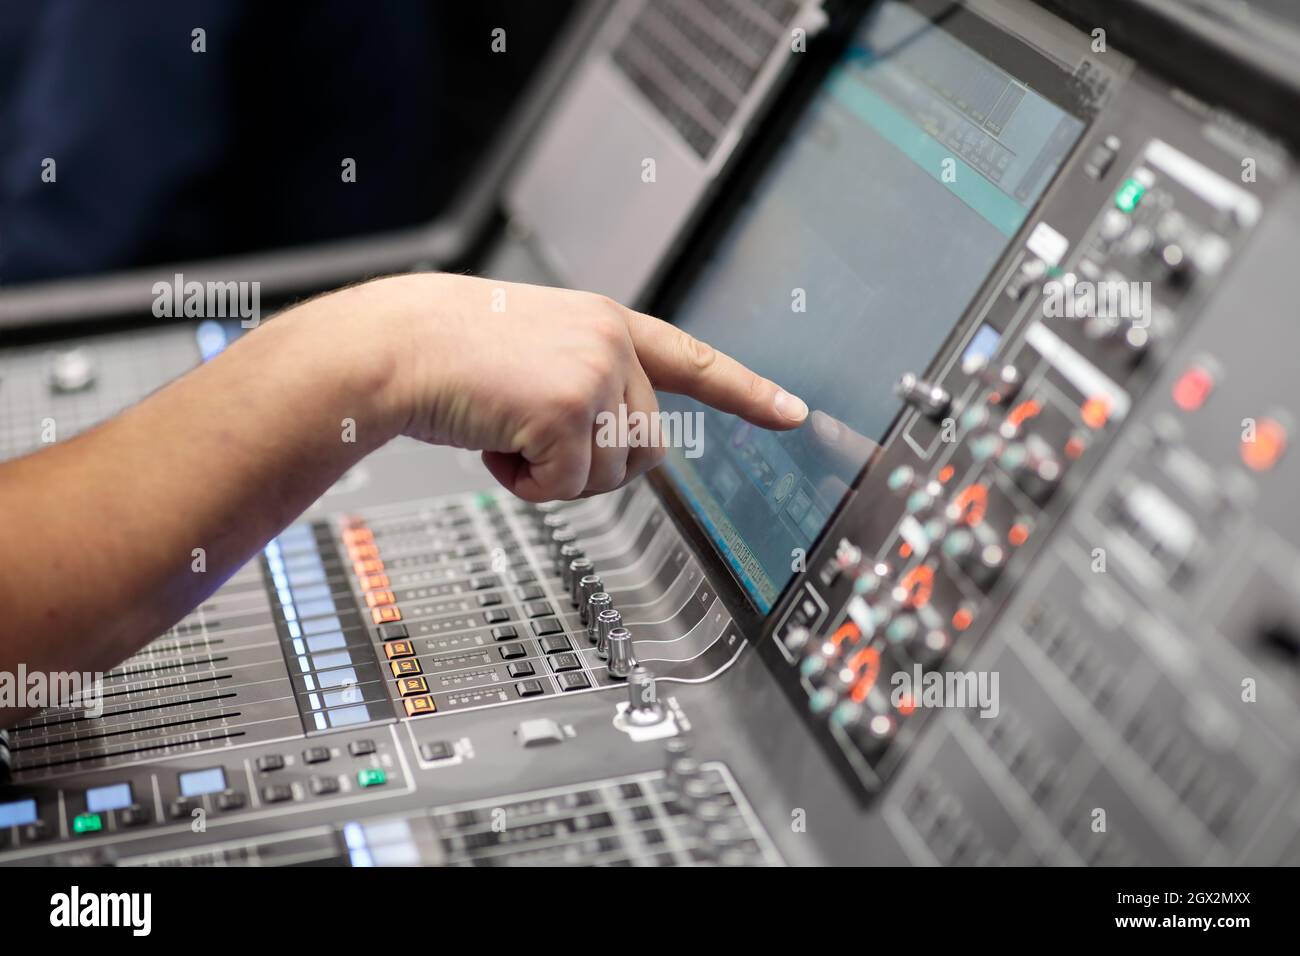 Der Bediener steuert das digitale Audio-Mischpult über einen Touchscreen. Selektiver Fokus. Stockfoto